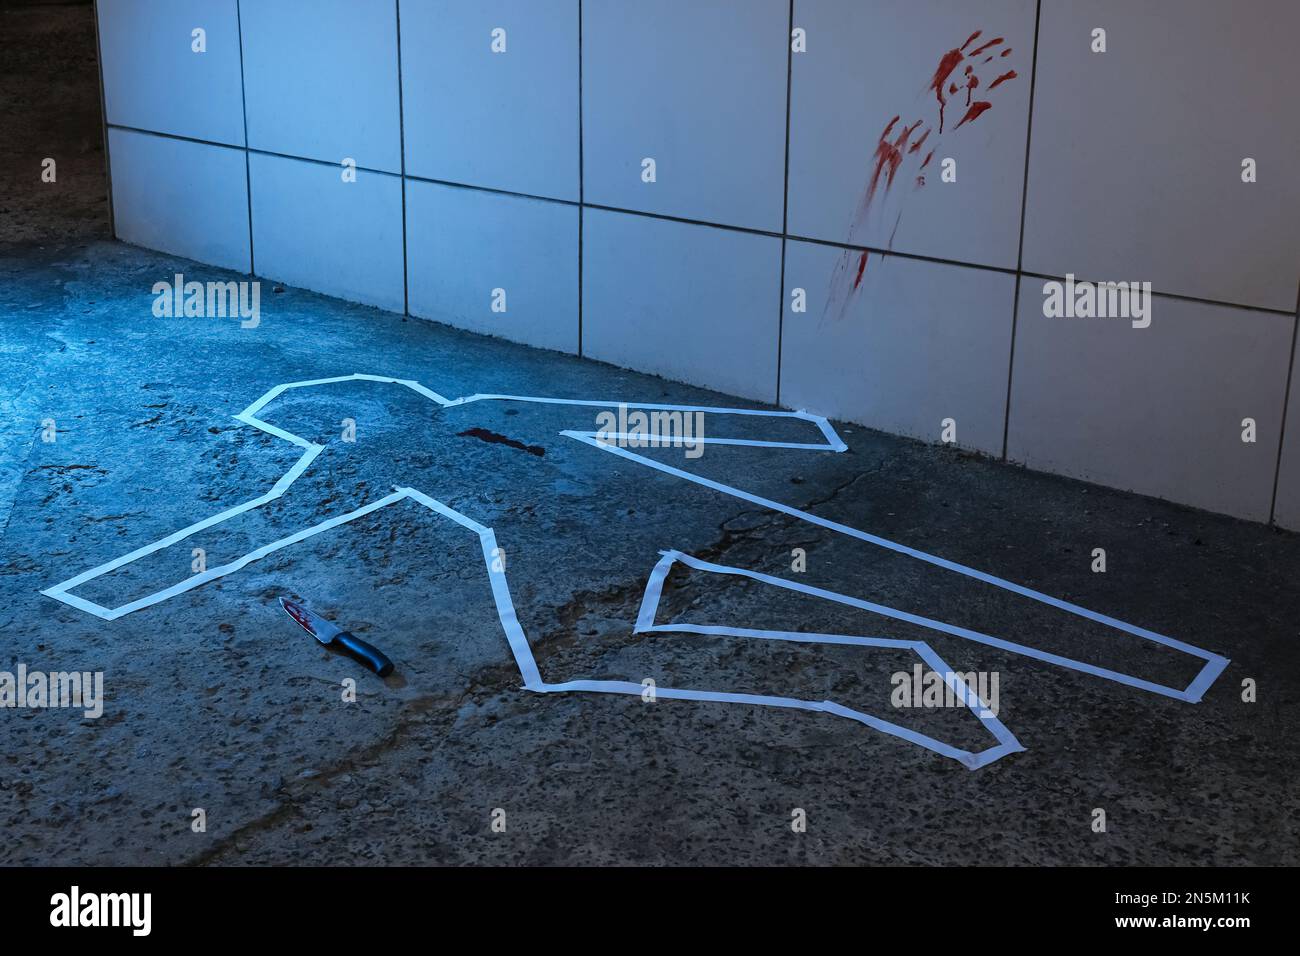 Scena del crimine con contorno di gesso, coltello e segni di sangue sul pavimento. Indagine investigativa Foto Stock